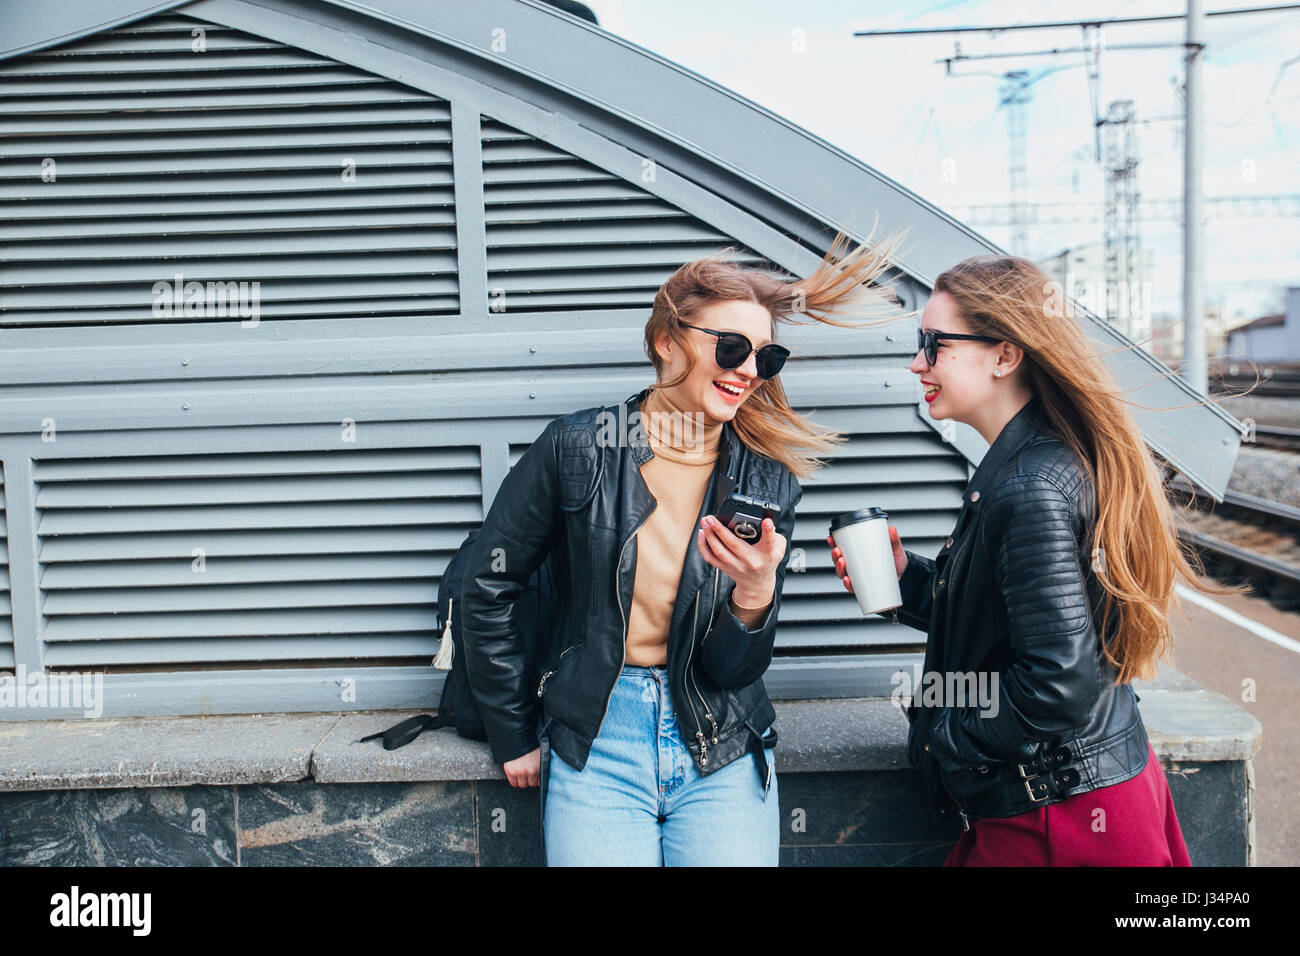 Conversazione tra due donne nella città.Outdoor Lifestyle ritratto di due migliori amici hipster ragazze indossano Elegante giacca di pelle e occhiali da sole con caffè, going crazy e avente un grande tempo insieme Foto Stock